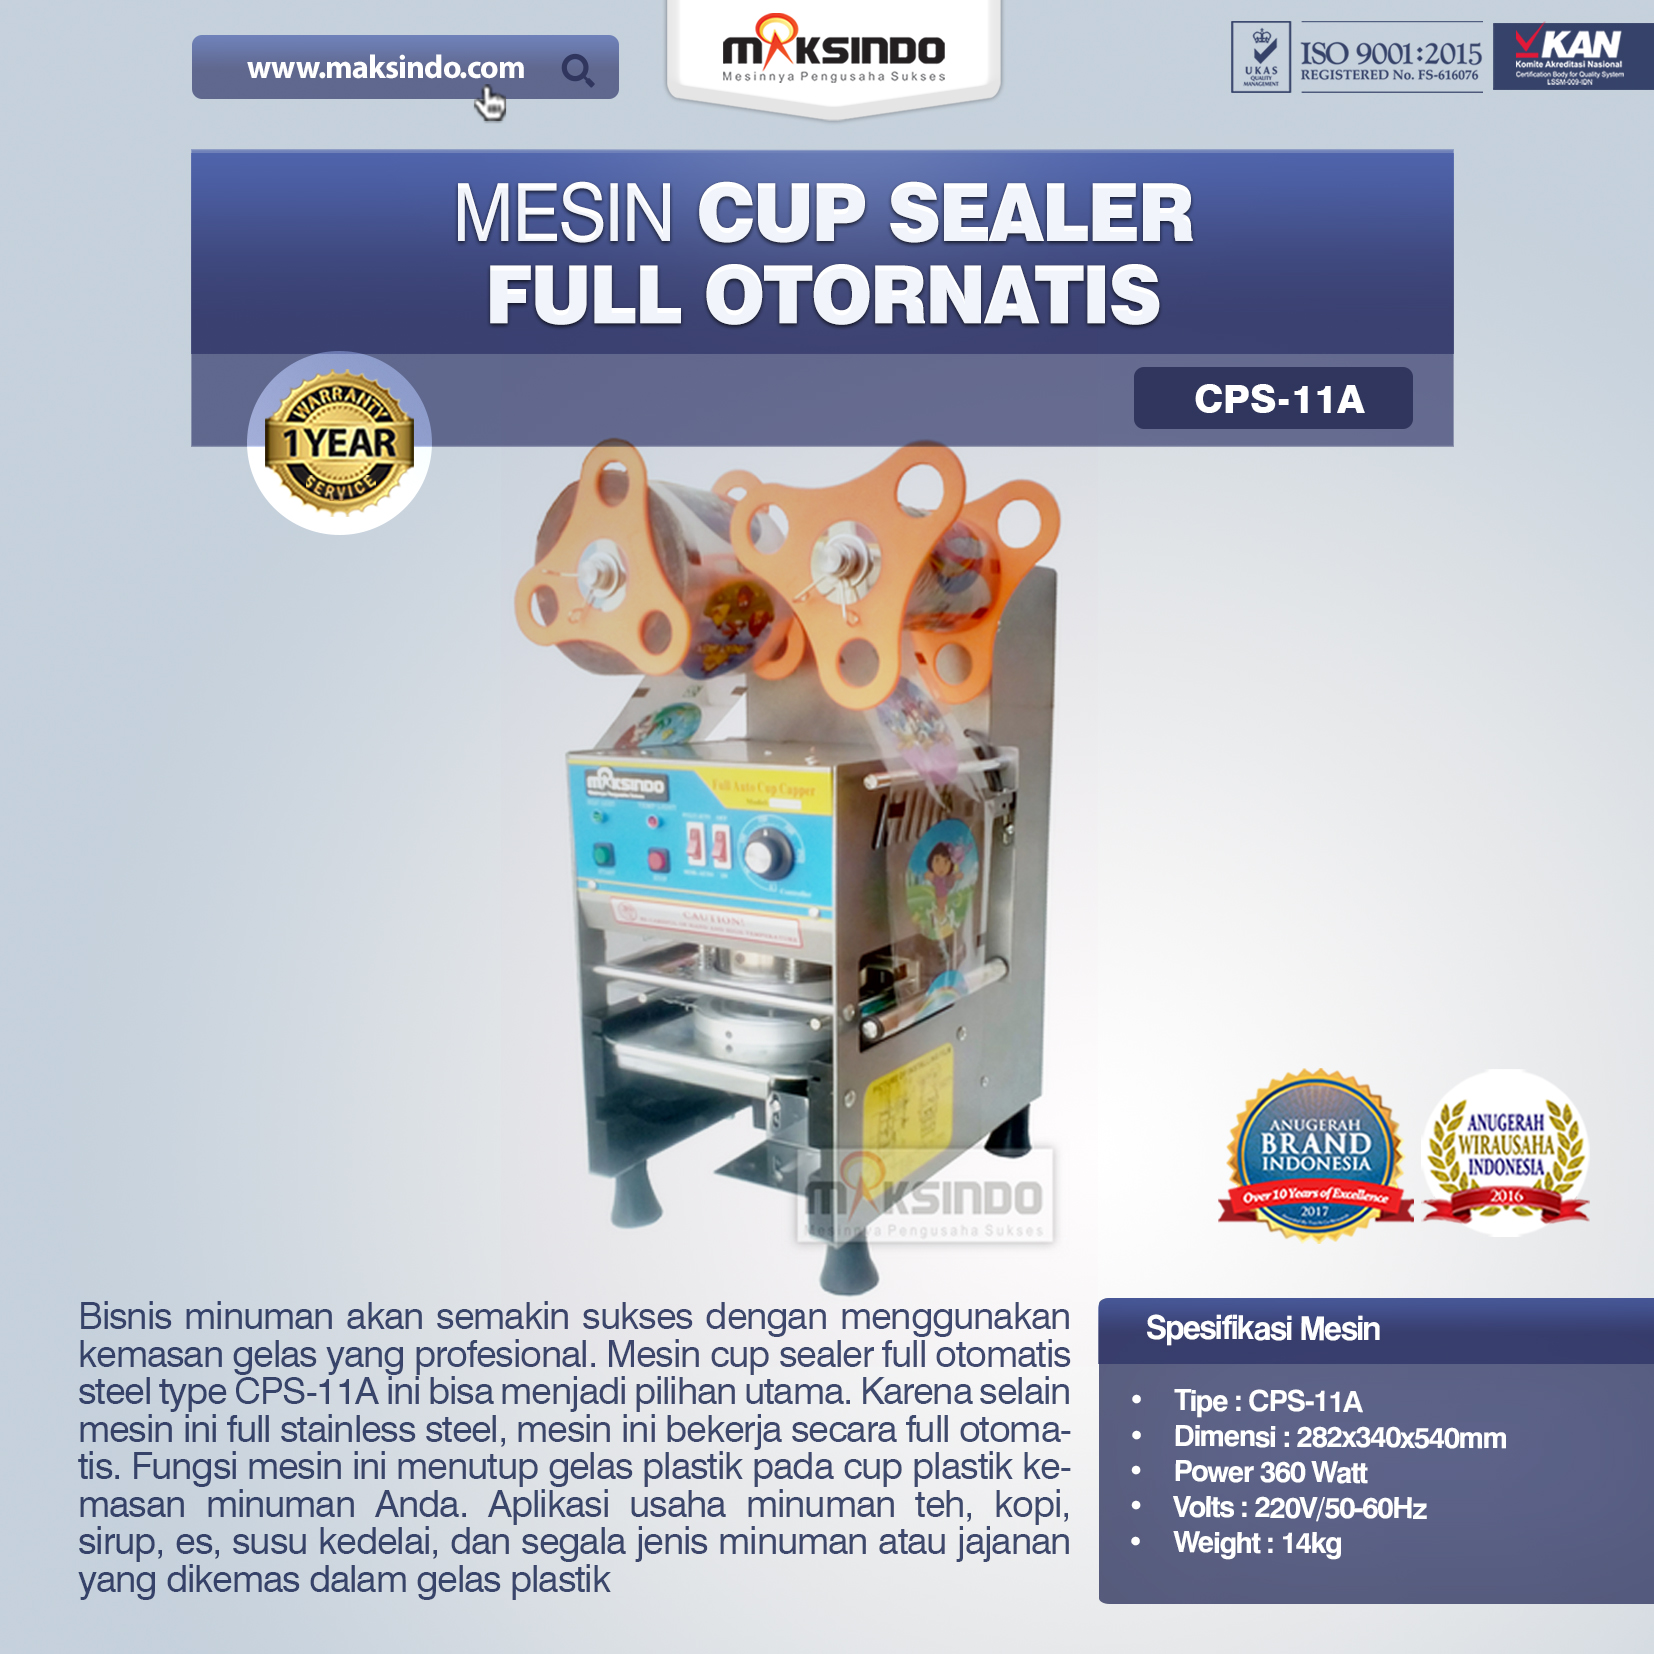 Jual Mesin Cup Sealer Full Otomatis (CPS-11A) di Solo